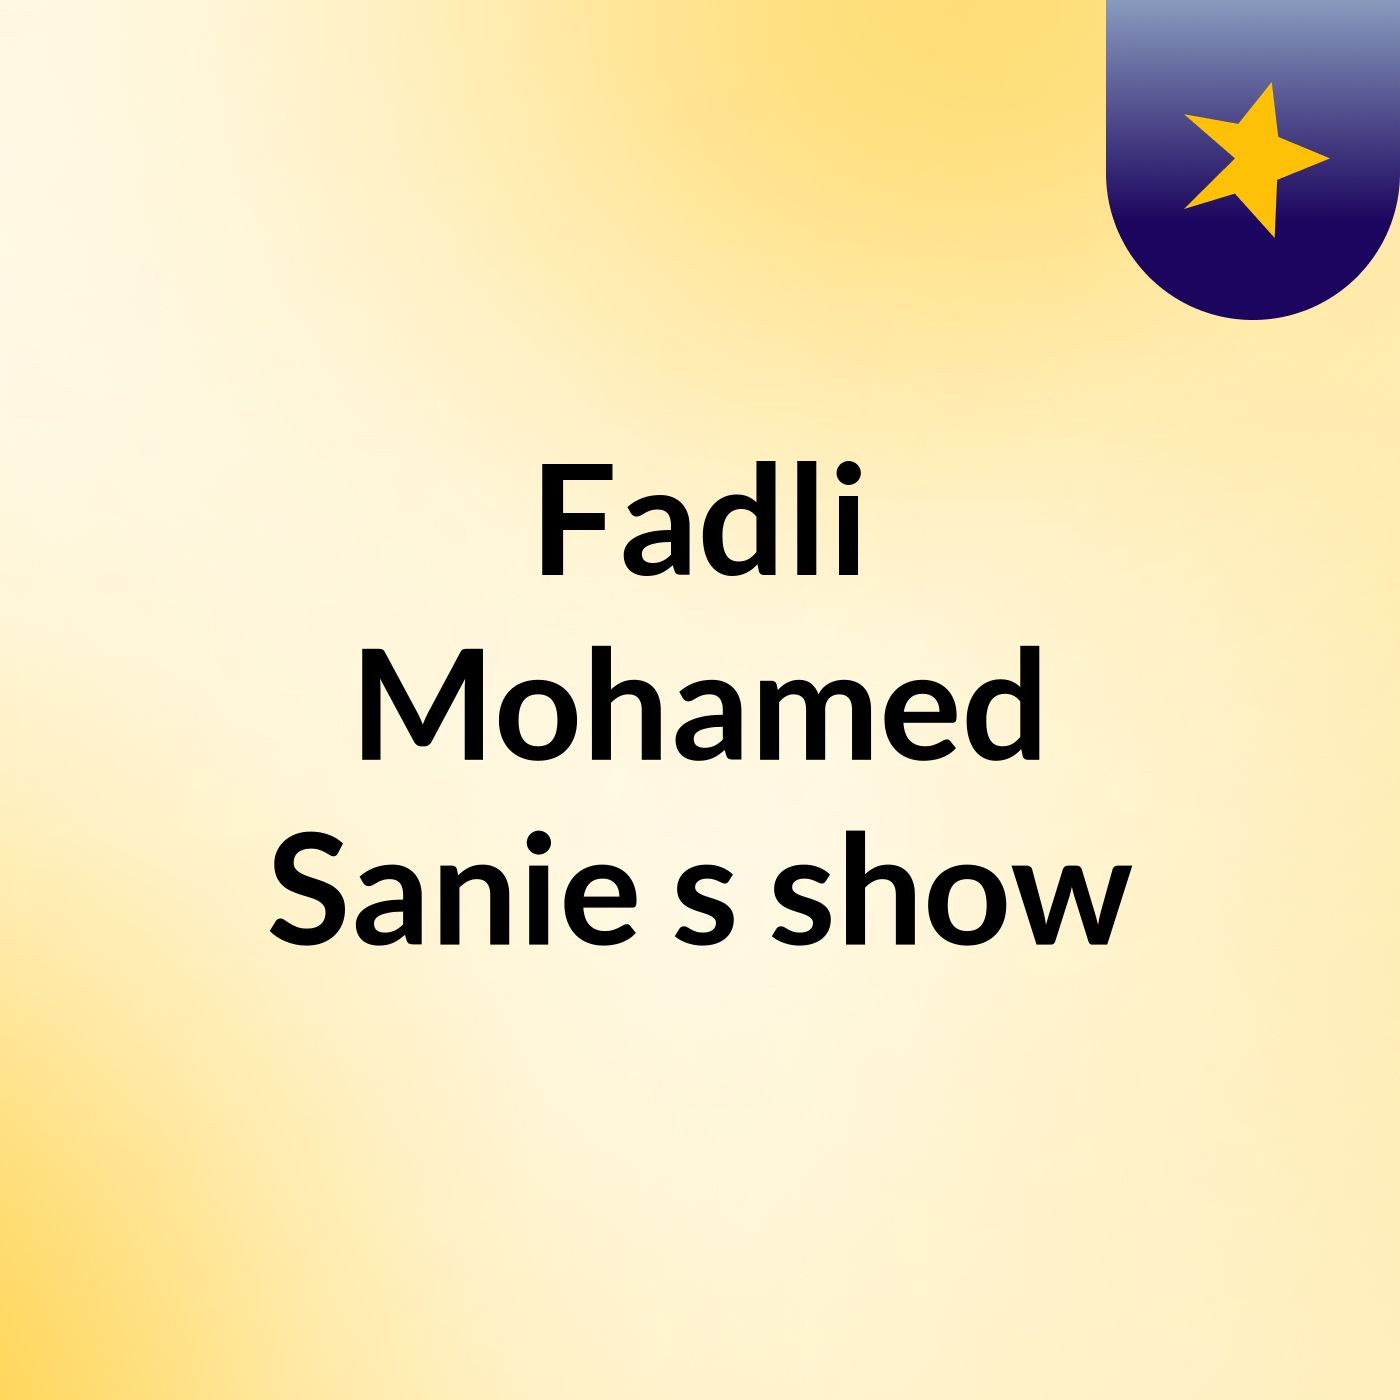 Episode 9 - Fadli Mohamed Sanie's show